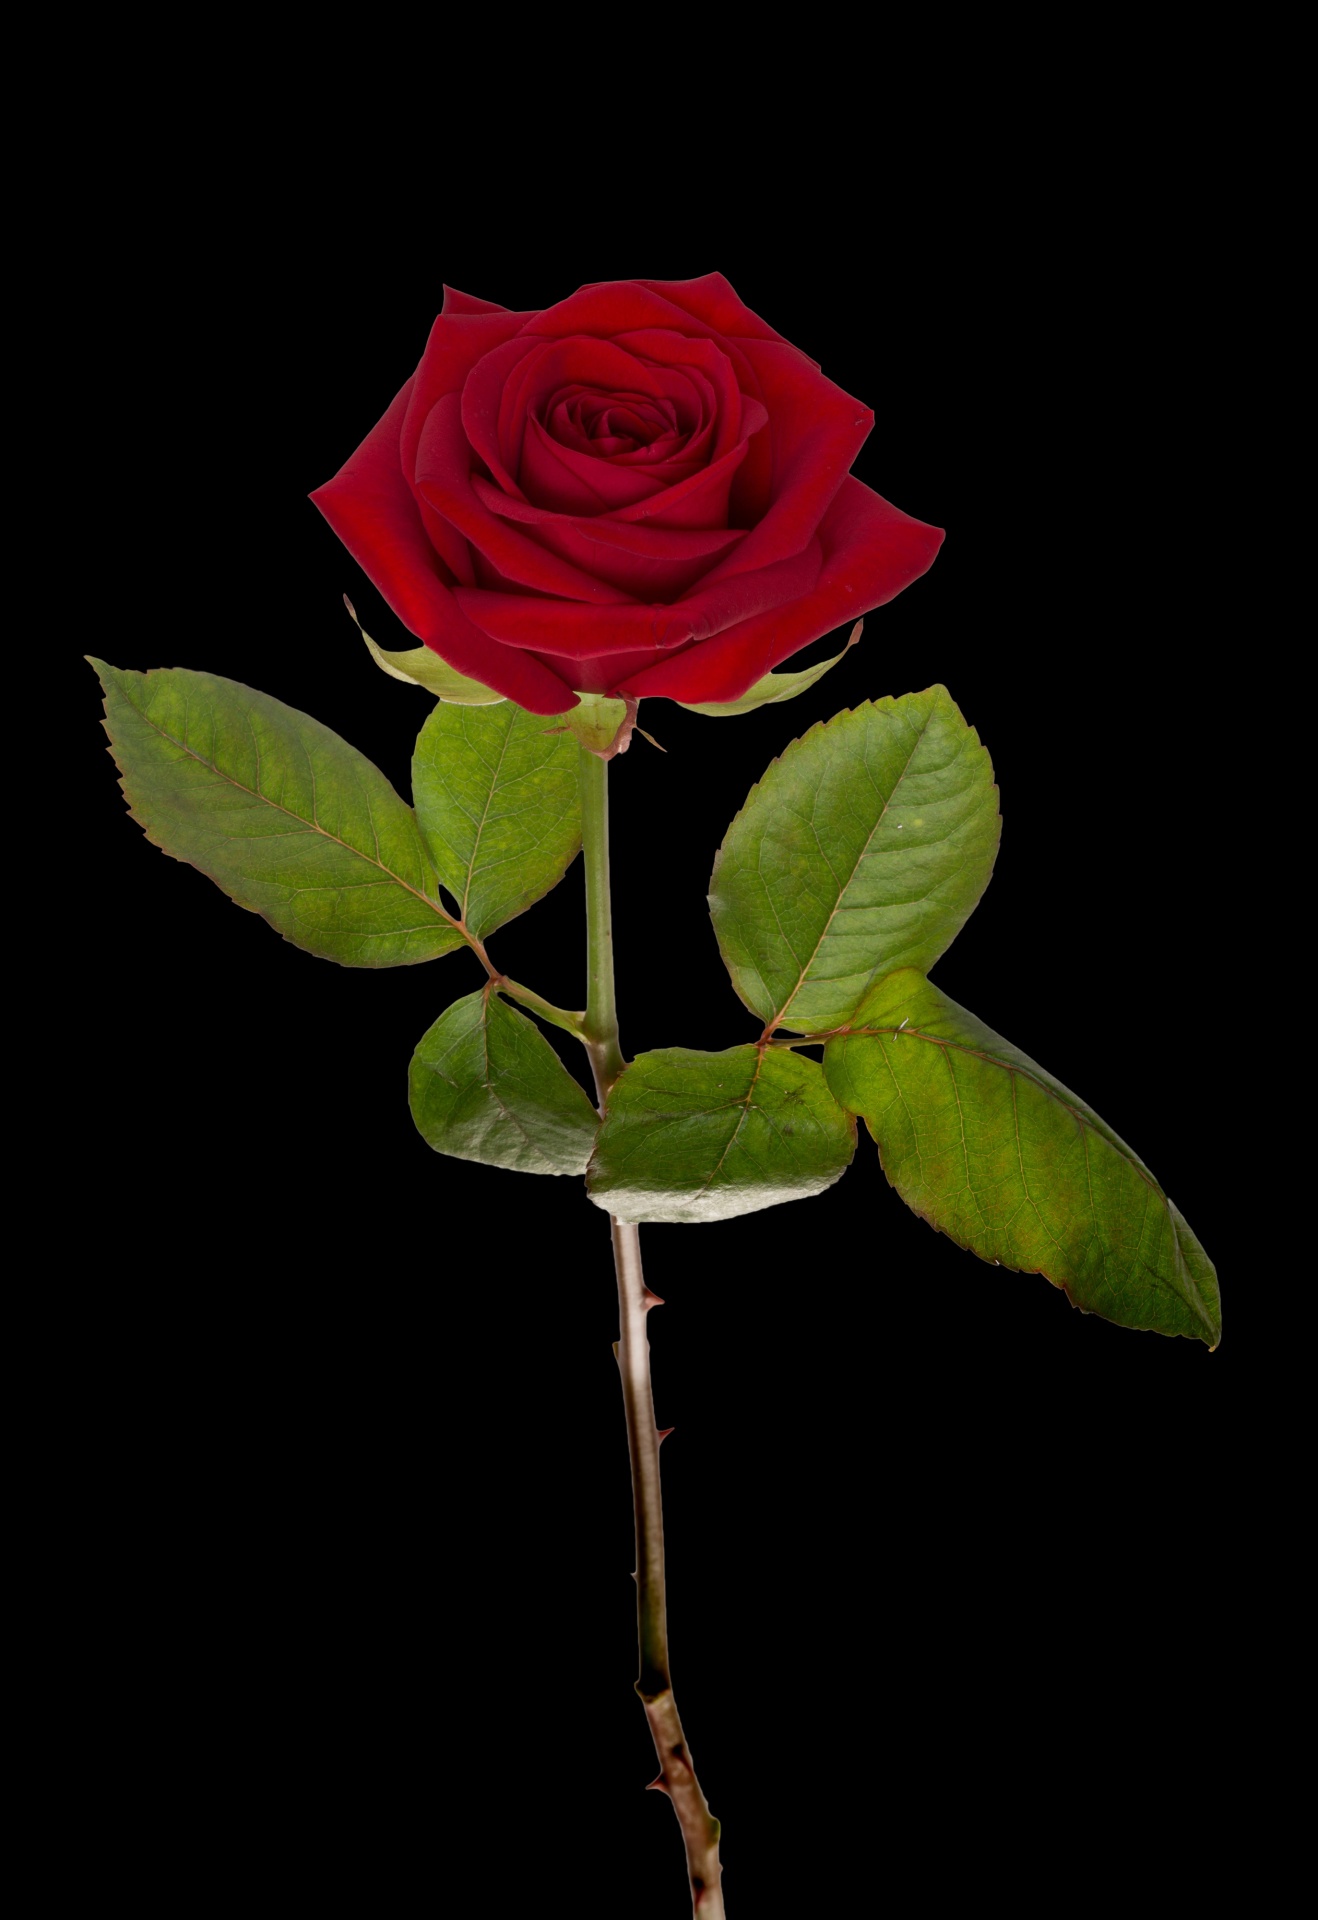 高清拍摄一朵玫瑰花娇艳欲滴暗红色花瓣层层绽放